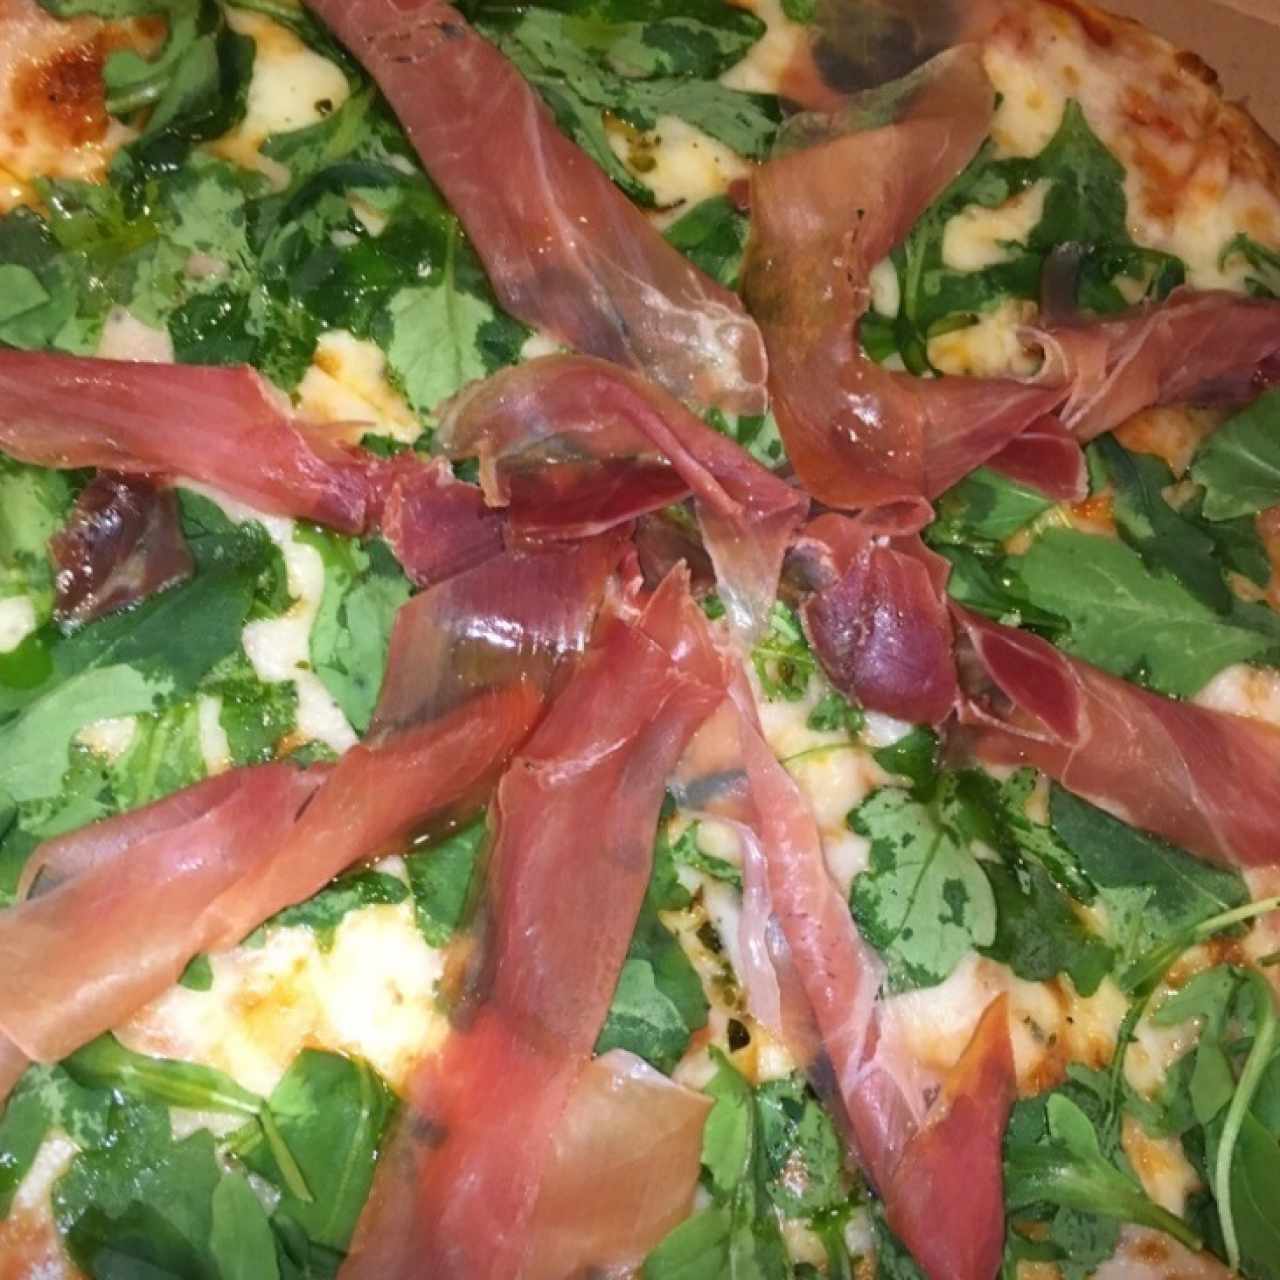 Pizzas - Prosciutto